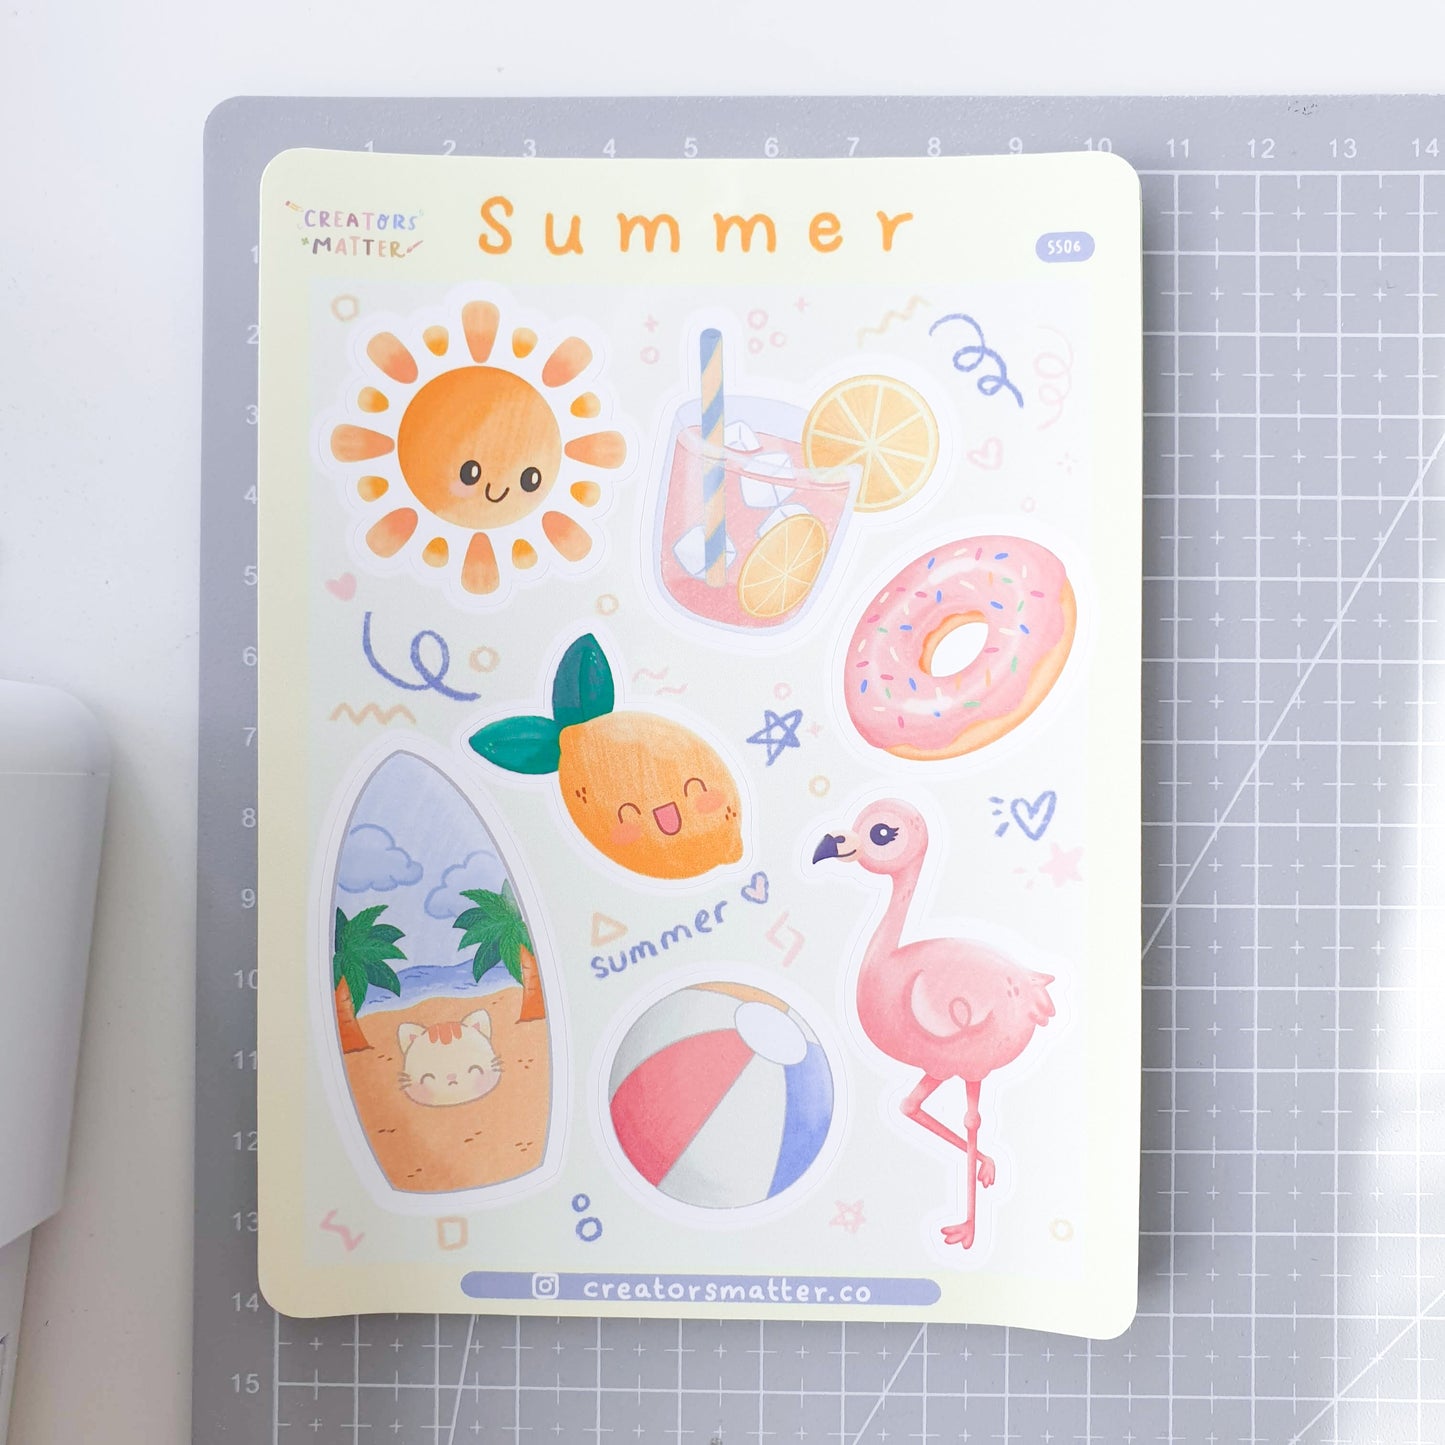 Creators Matter | Summer Sticker Sheet